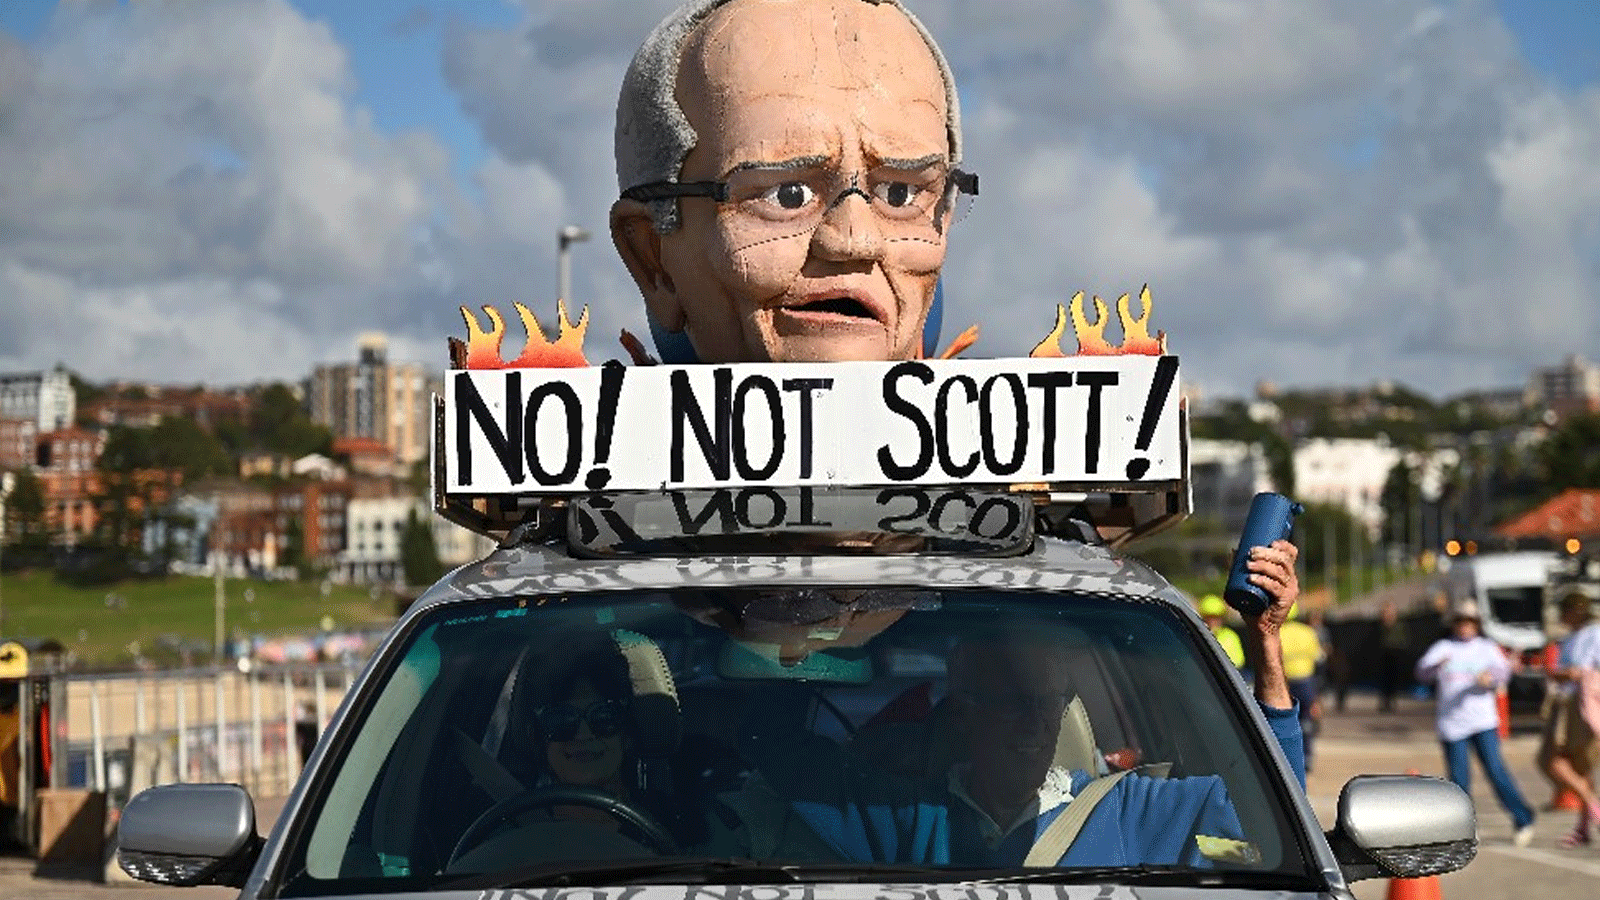 أستراليون يرفعون شعار المعارضة لسكوت موريسون رئيس الوزر اء الاسترالي الذي أقر بخسارته للانتخابات